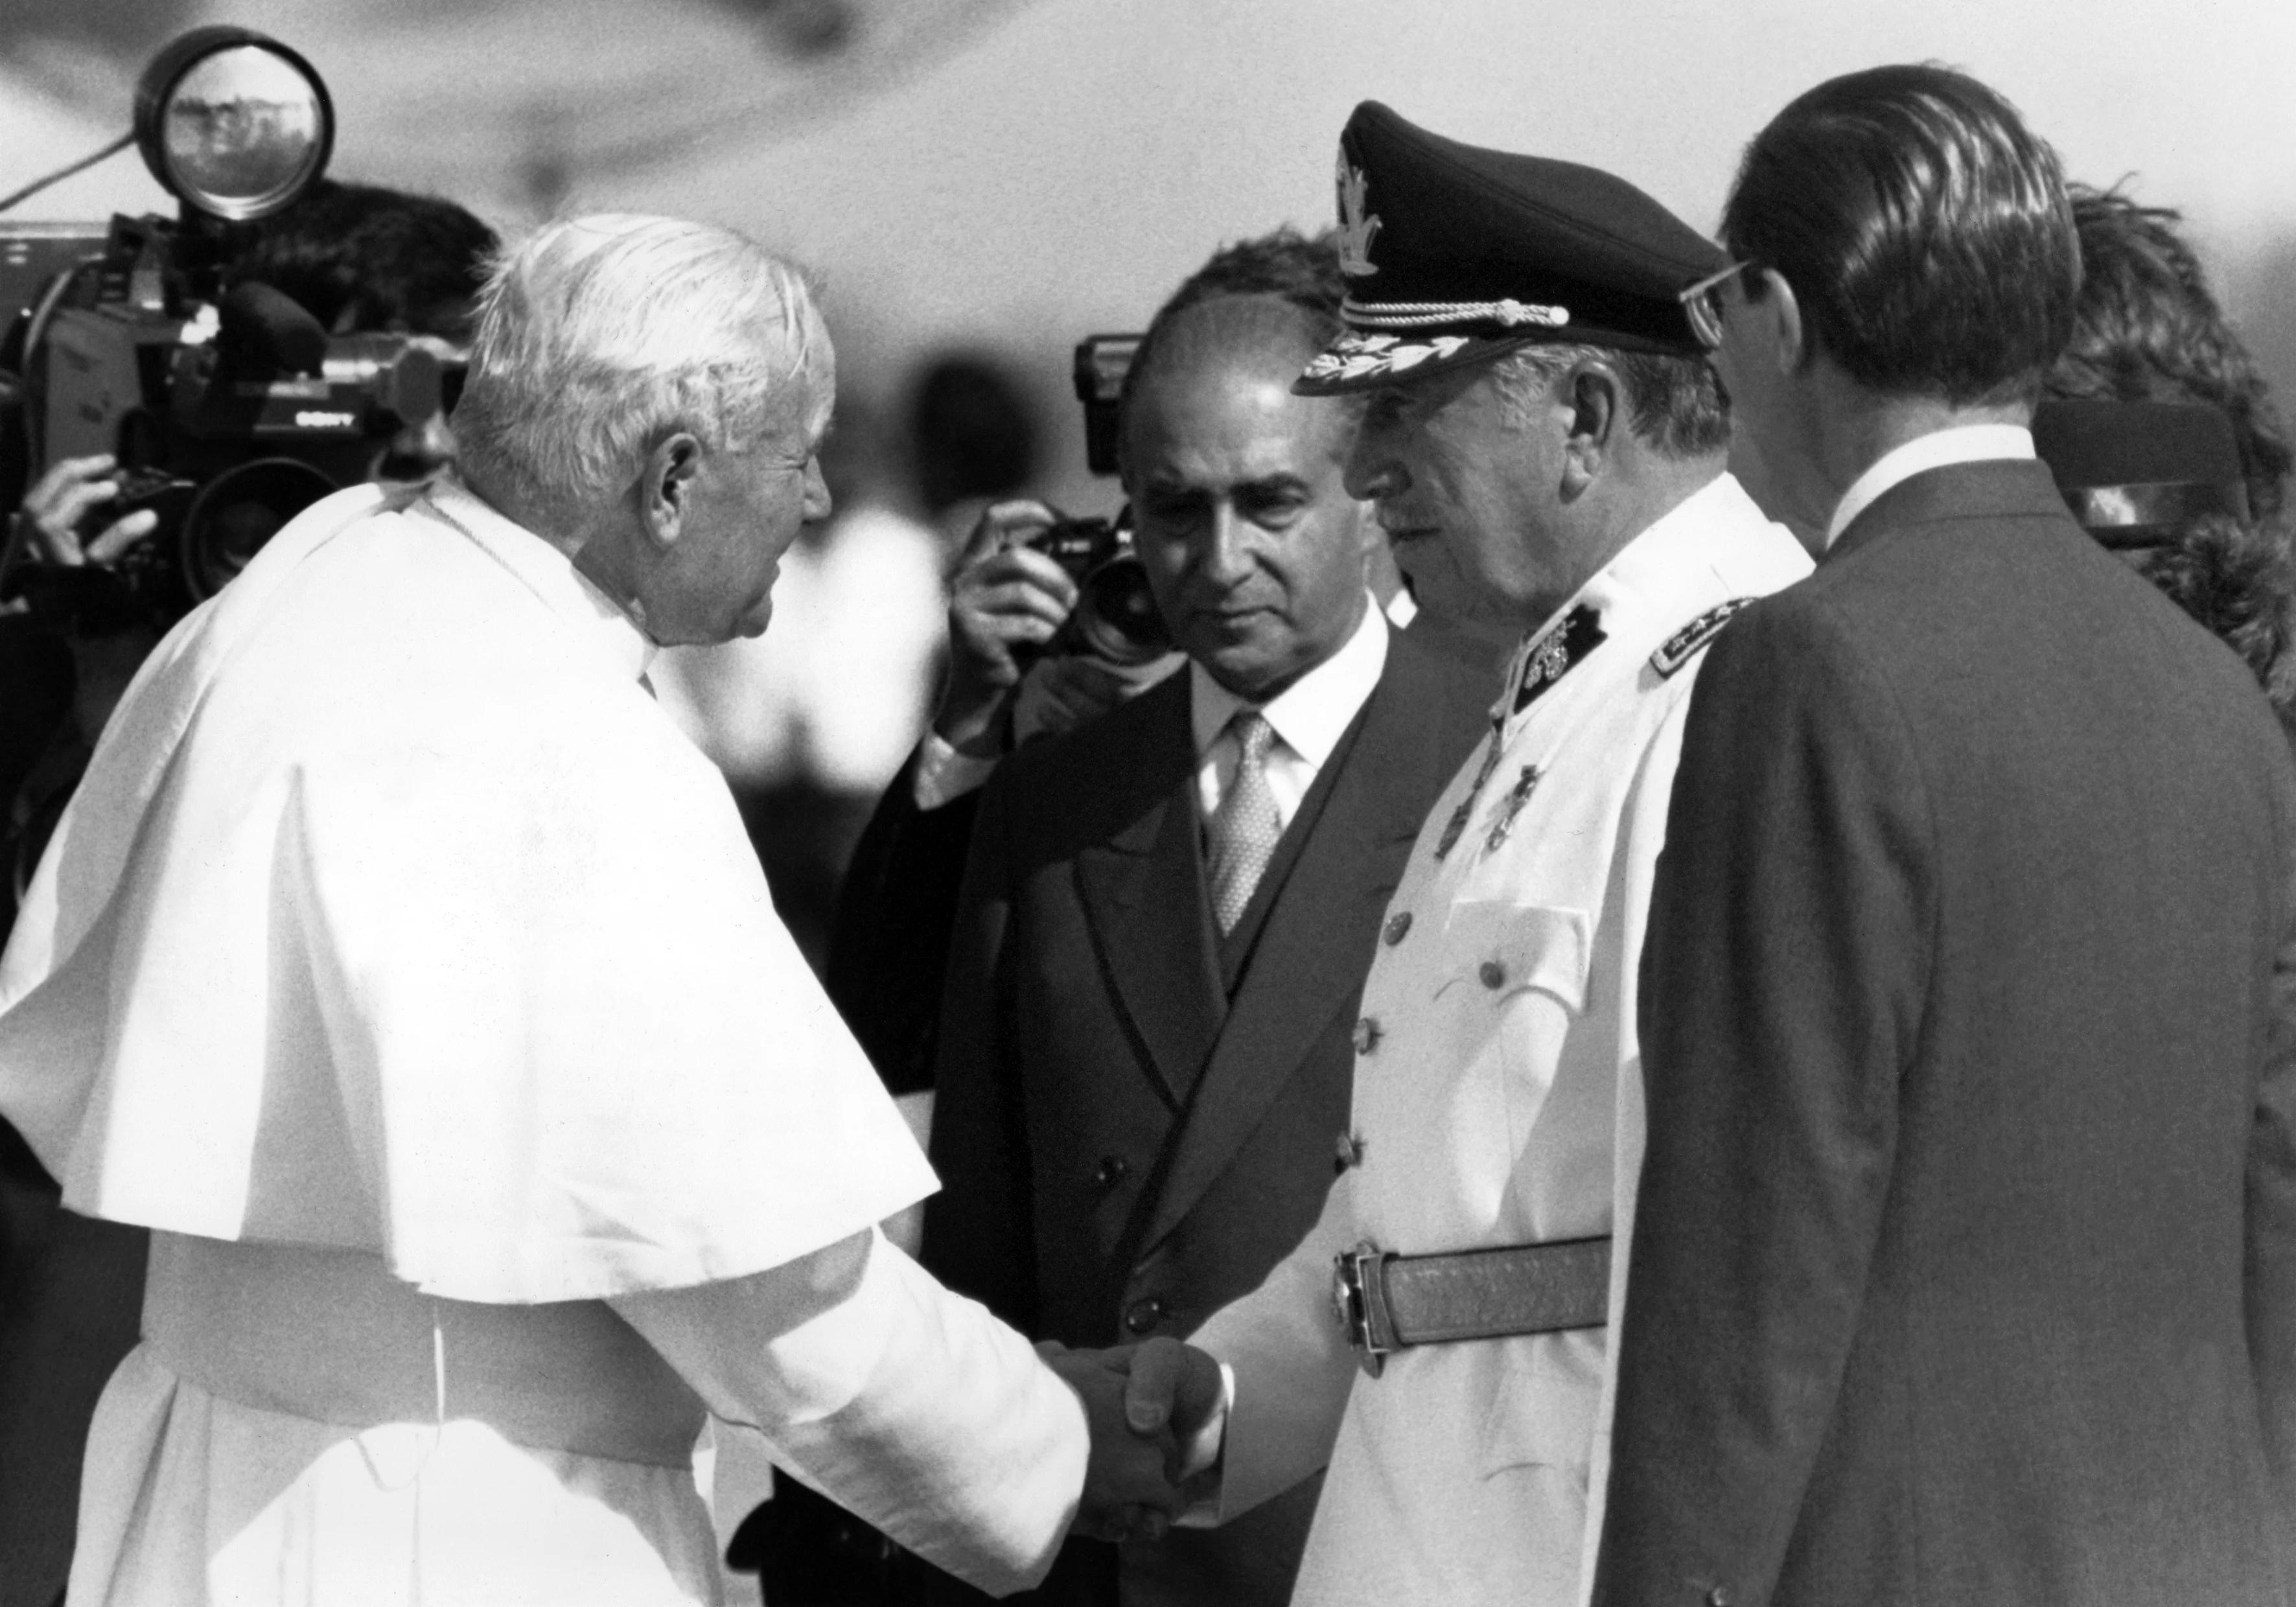 Papież Jan Paweł II ściska rękę dyktatora Chile Augusto Pinocheta, w otoczeniu urzędników w garniturach.